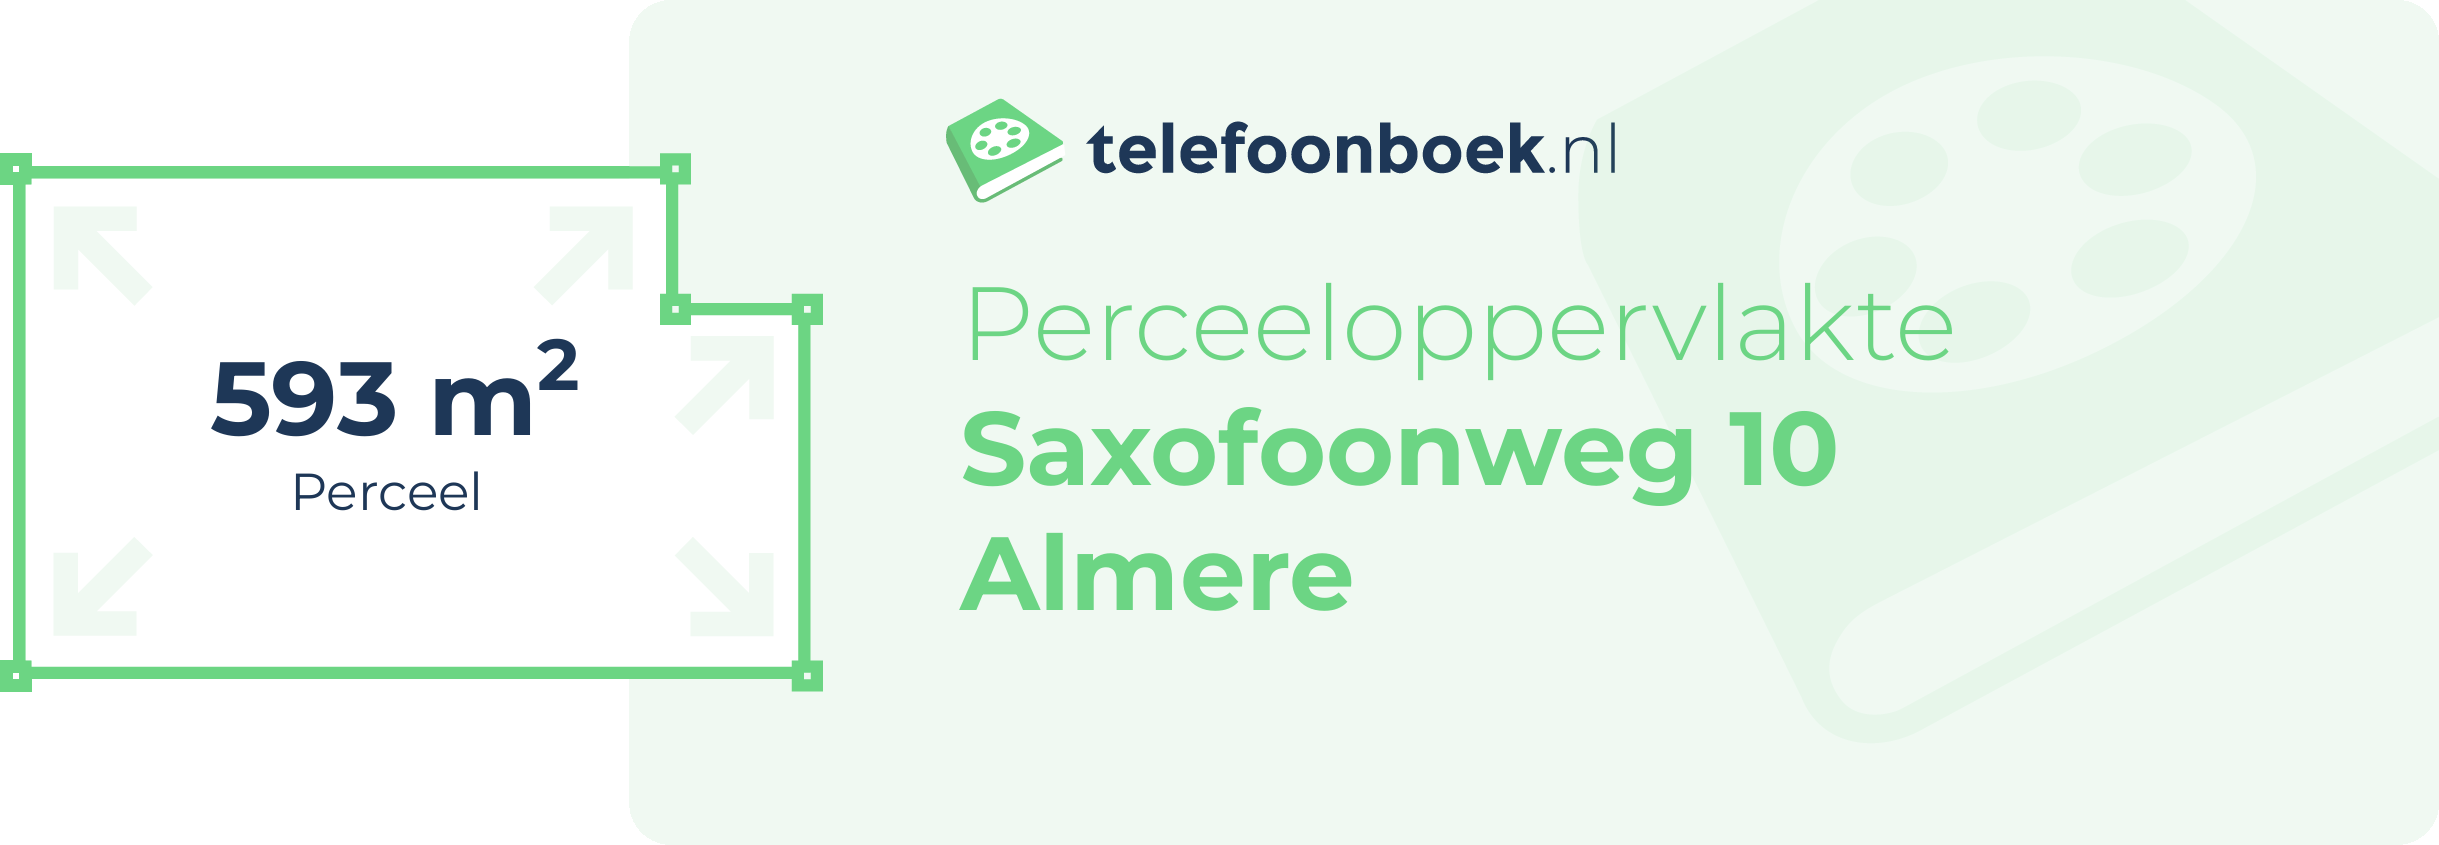 Perceeloppervlakte Saxofoonweg 10 Almere